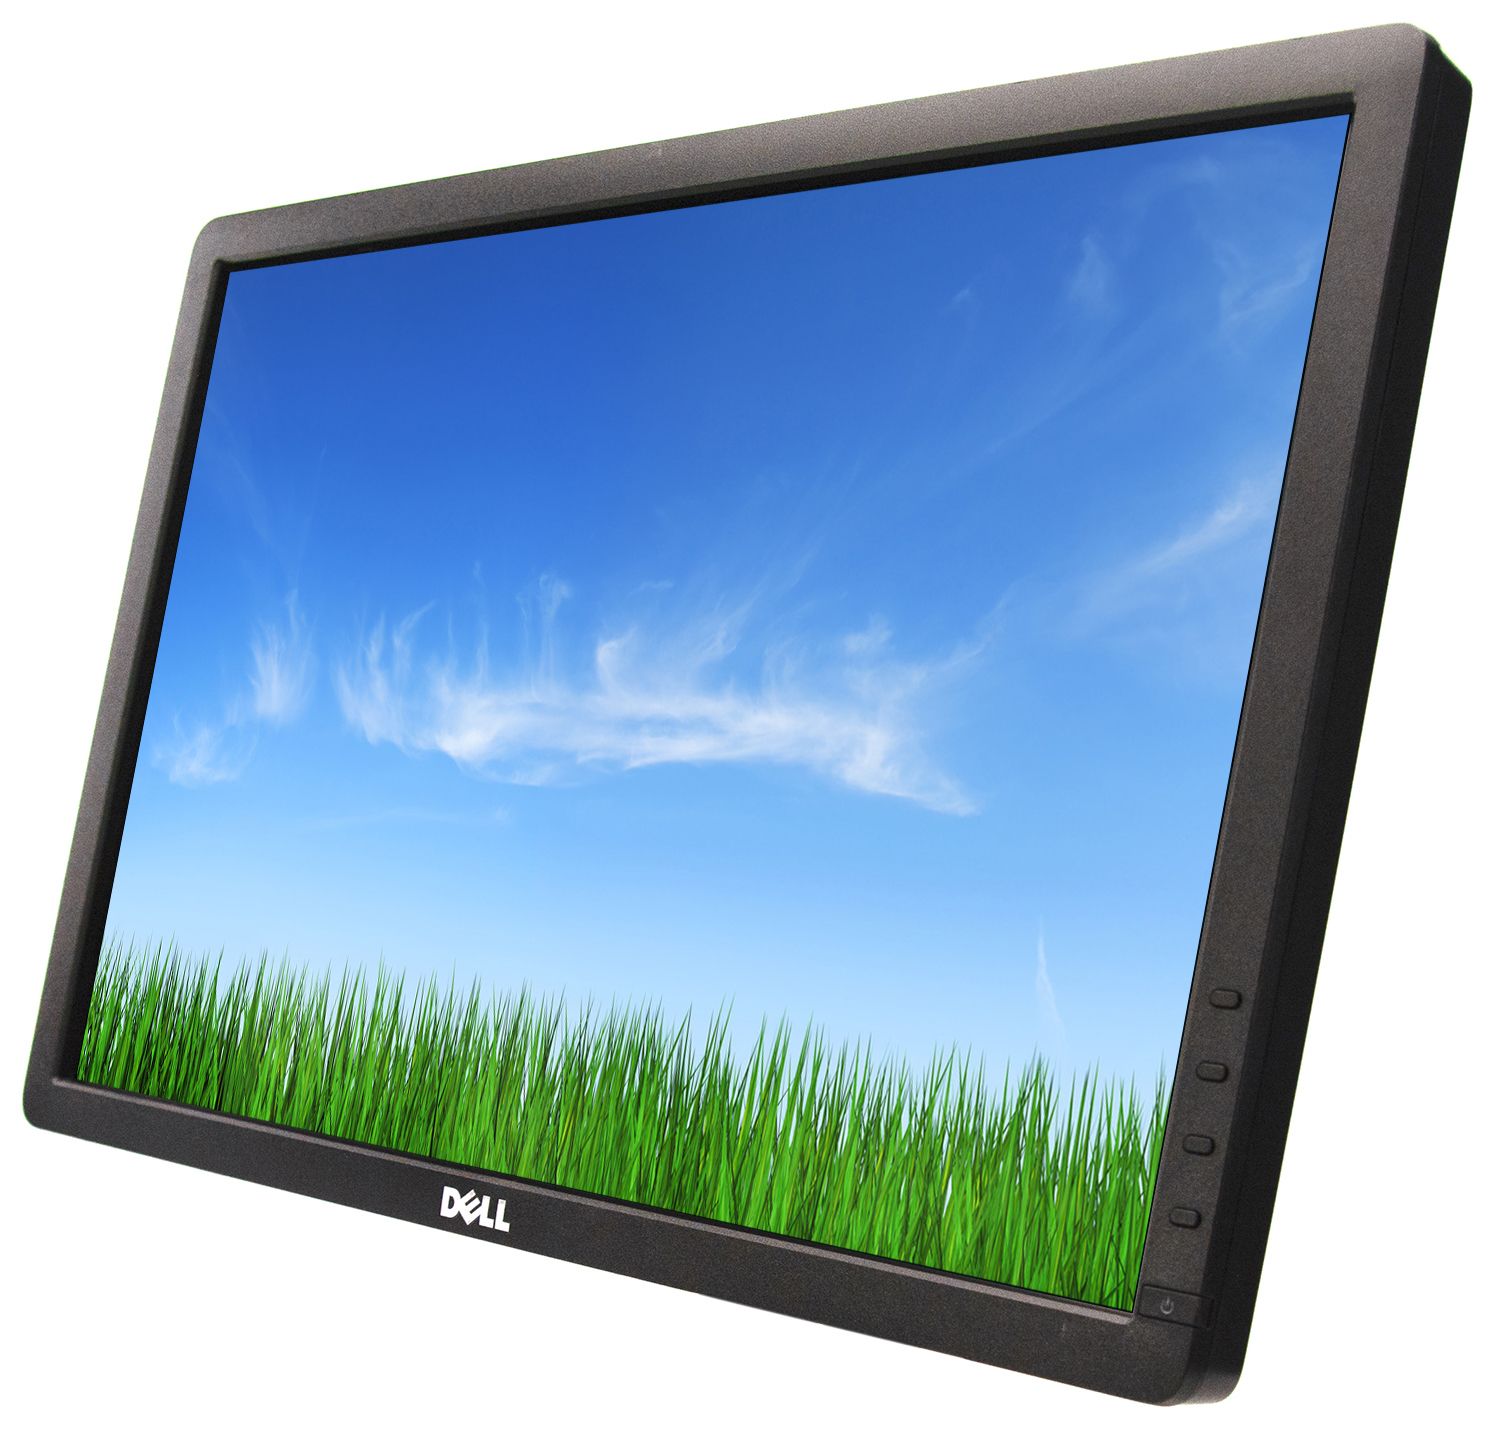 Dell P1913T 19" LCD monitor - Grade A - No Stand